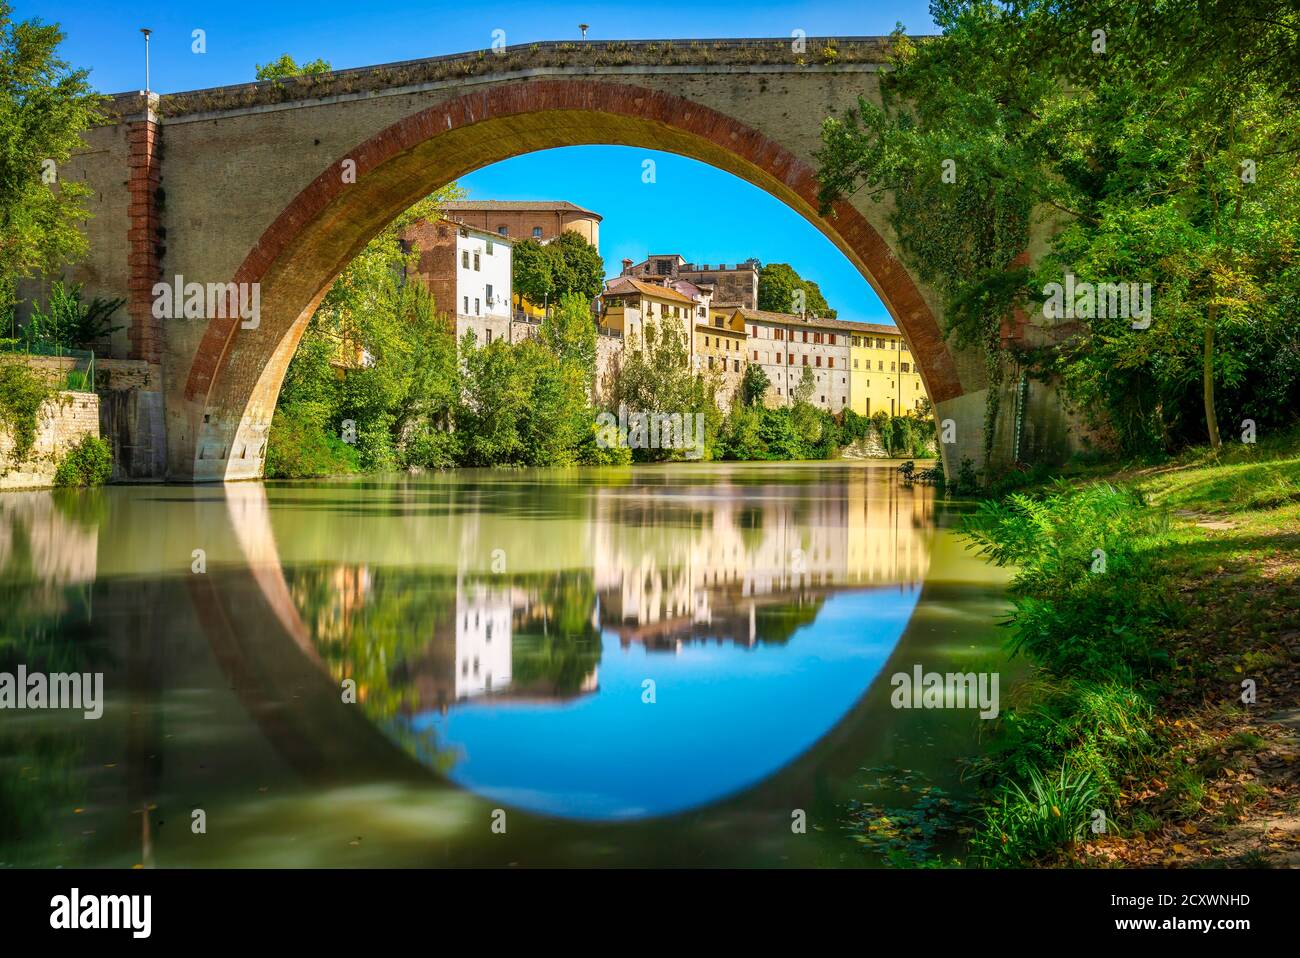 Ponte della Concordia oder Diocleziano, alte römische Brücke über den Fluss Metauro. Fossombrone, Provinz Pesaro und Urbino, Marken, Italien, Europa. Stockfoto